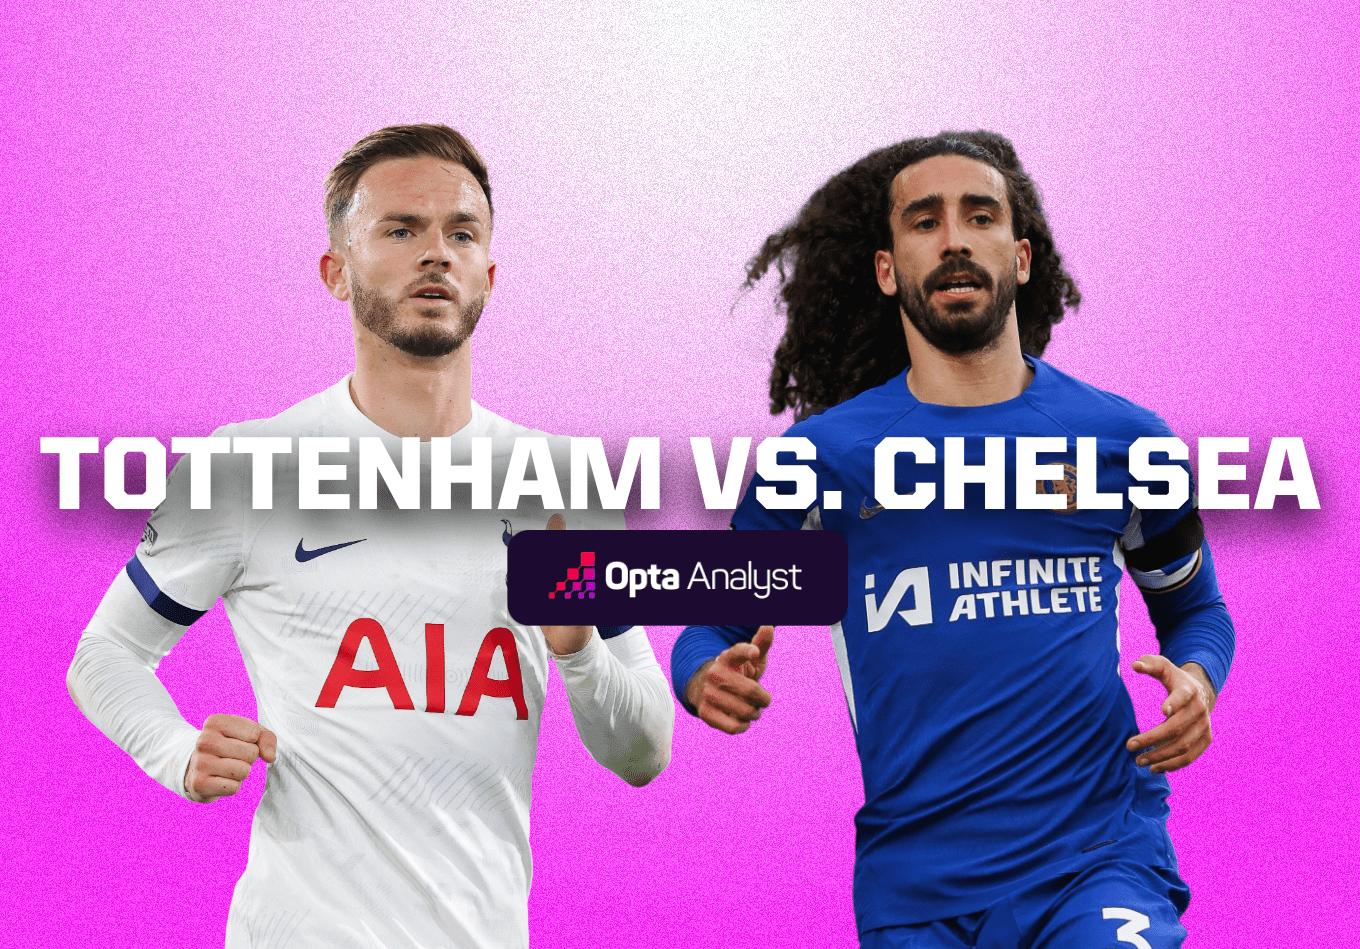 Tottenham Hotspur vs. Chelsea, Premier League: Preview, team news